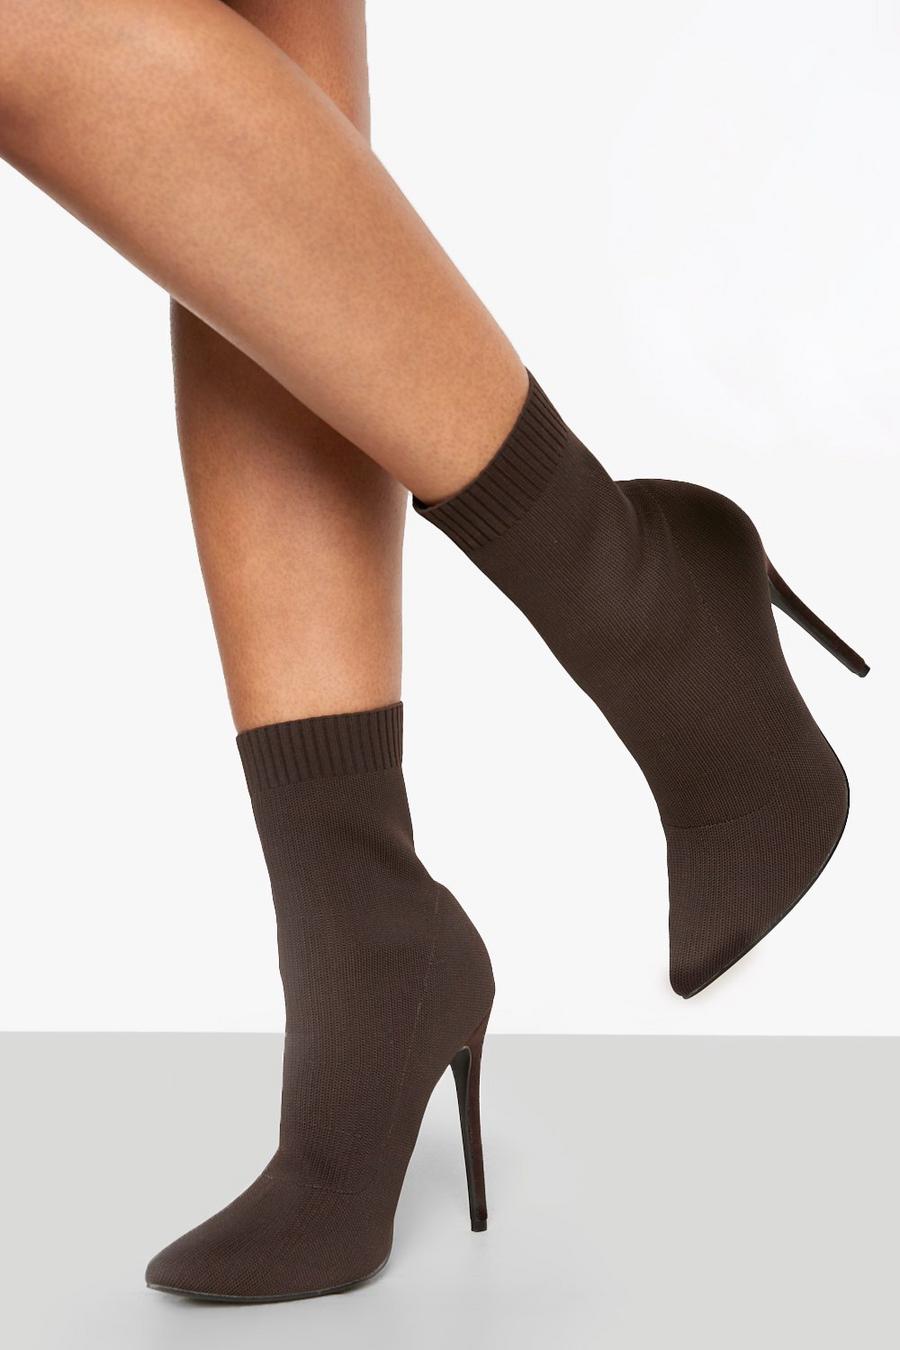 Botas calcetín de holgura ancha de tela con tacón de aguja, Chocolate marrone